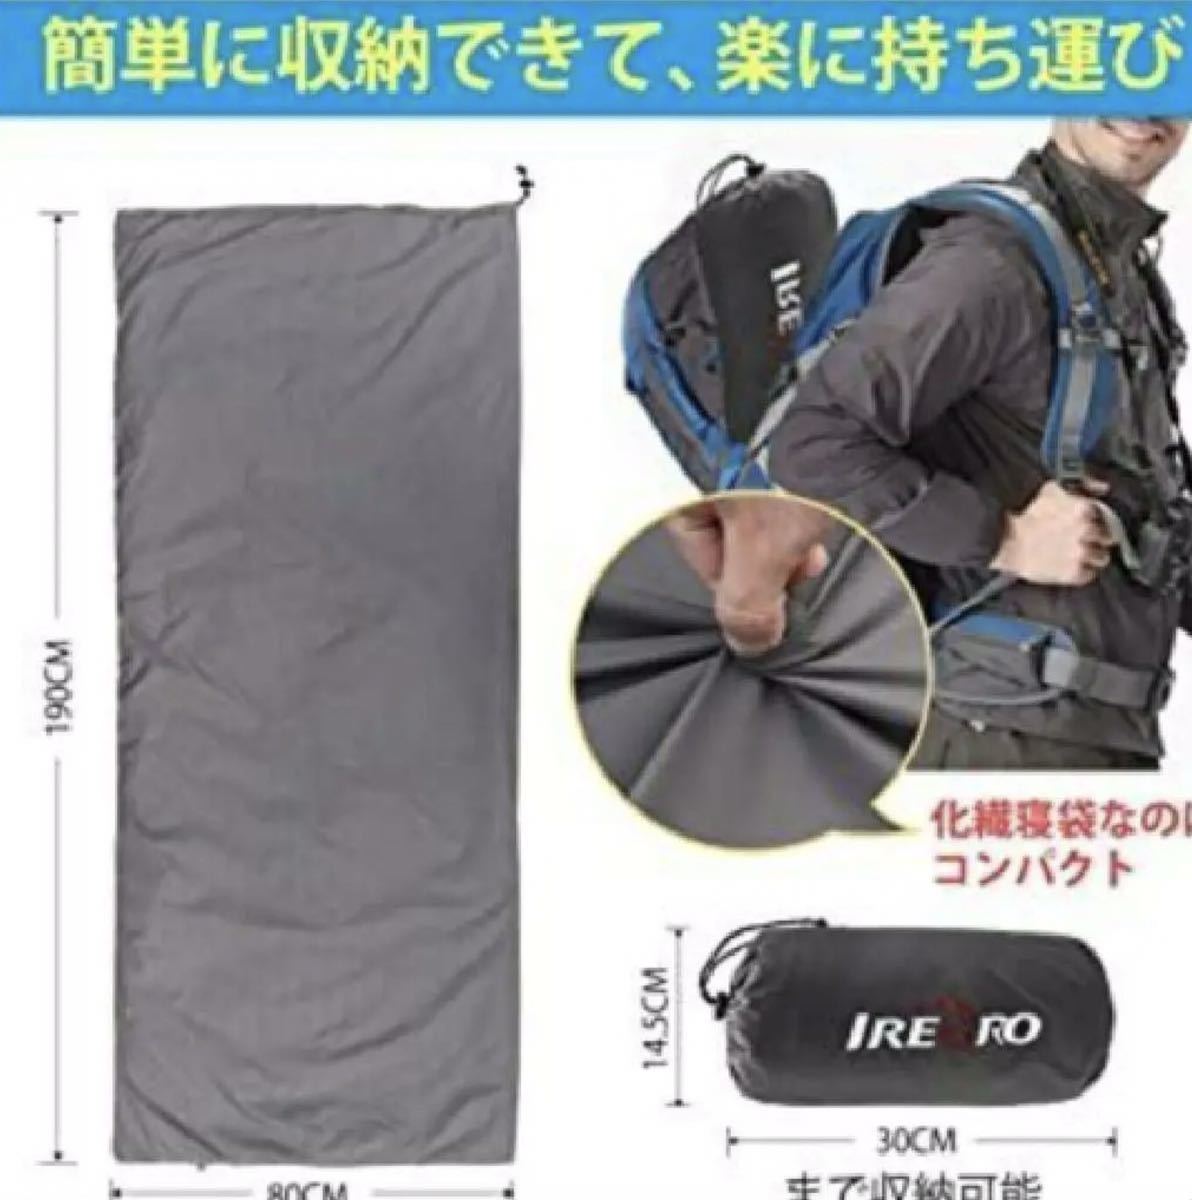 寝袋 夏用 おしゃれ 封筒型 アウトドア キャンプ 防災用 丸洗い可能